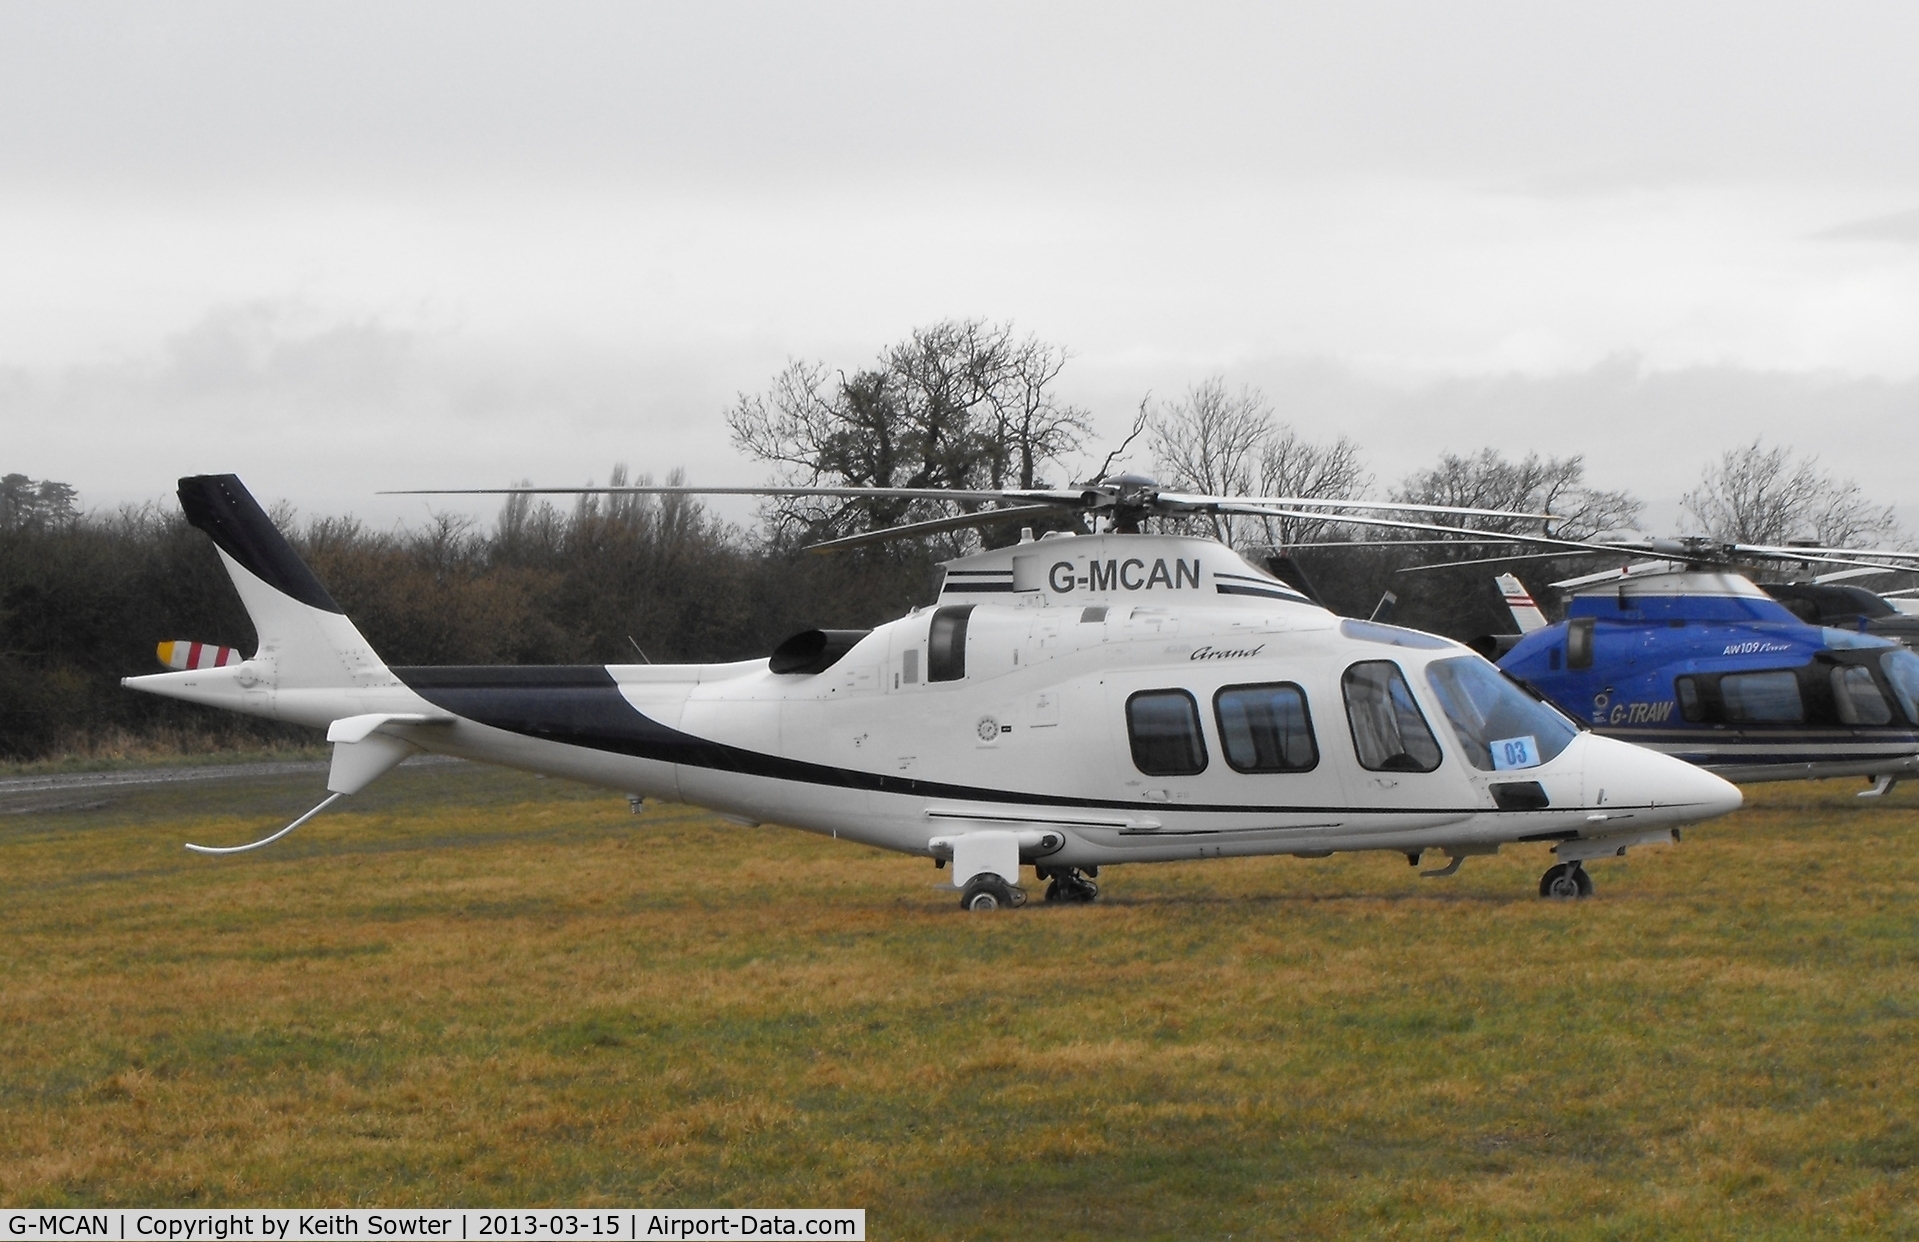 G-MCAN, 2006 Agusta A-109S Grand C/N 22021, Visiting Cheltenham Racecourse